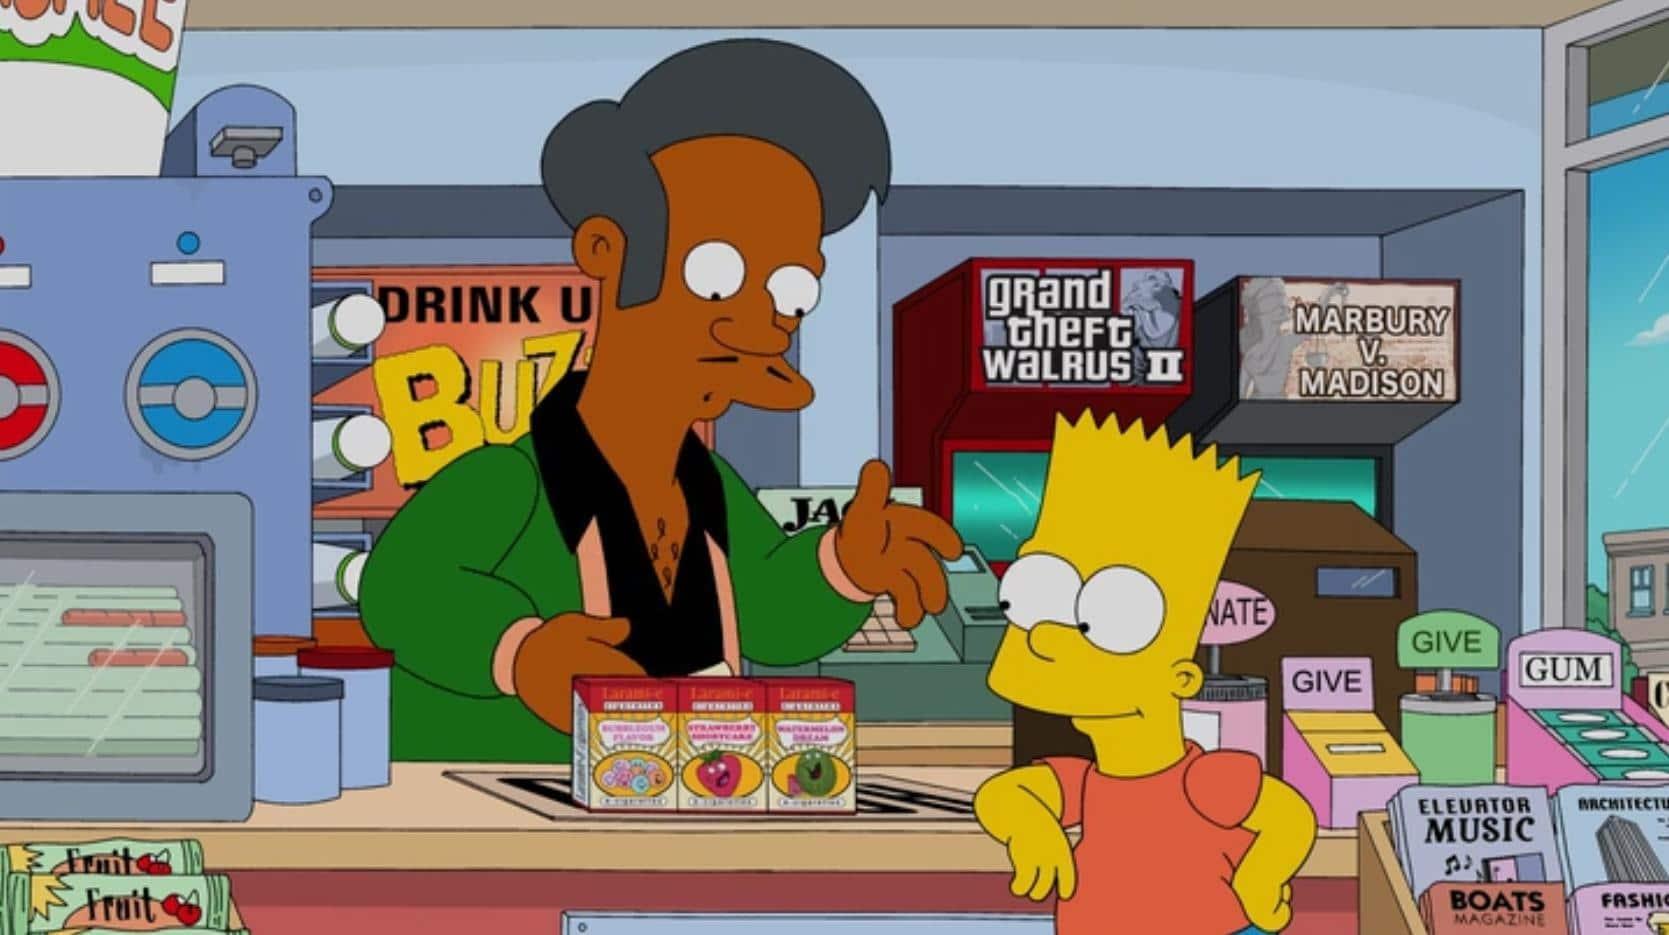 Os Simpsons | Apu deve passar por mudanças após críticas, diz dublador